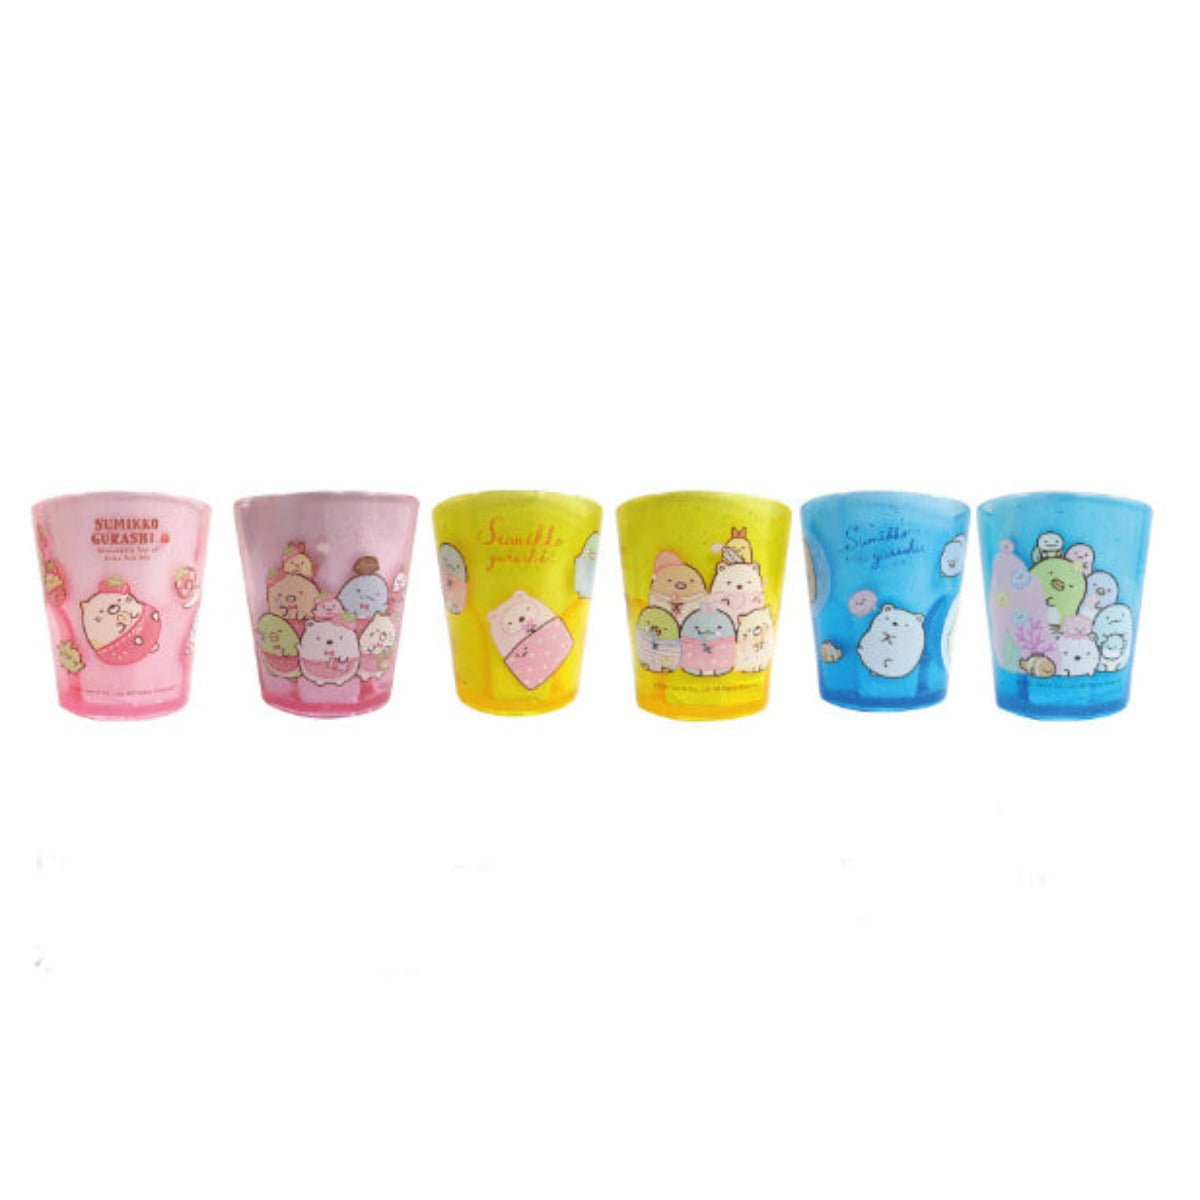 Cup Plastic - Sumikko Gurashi G 3.5"